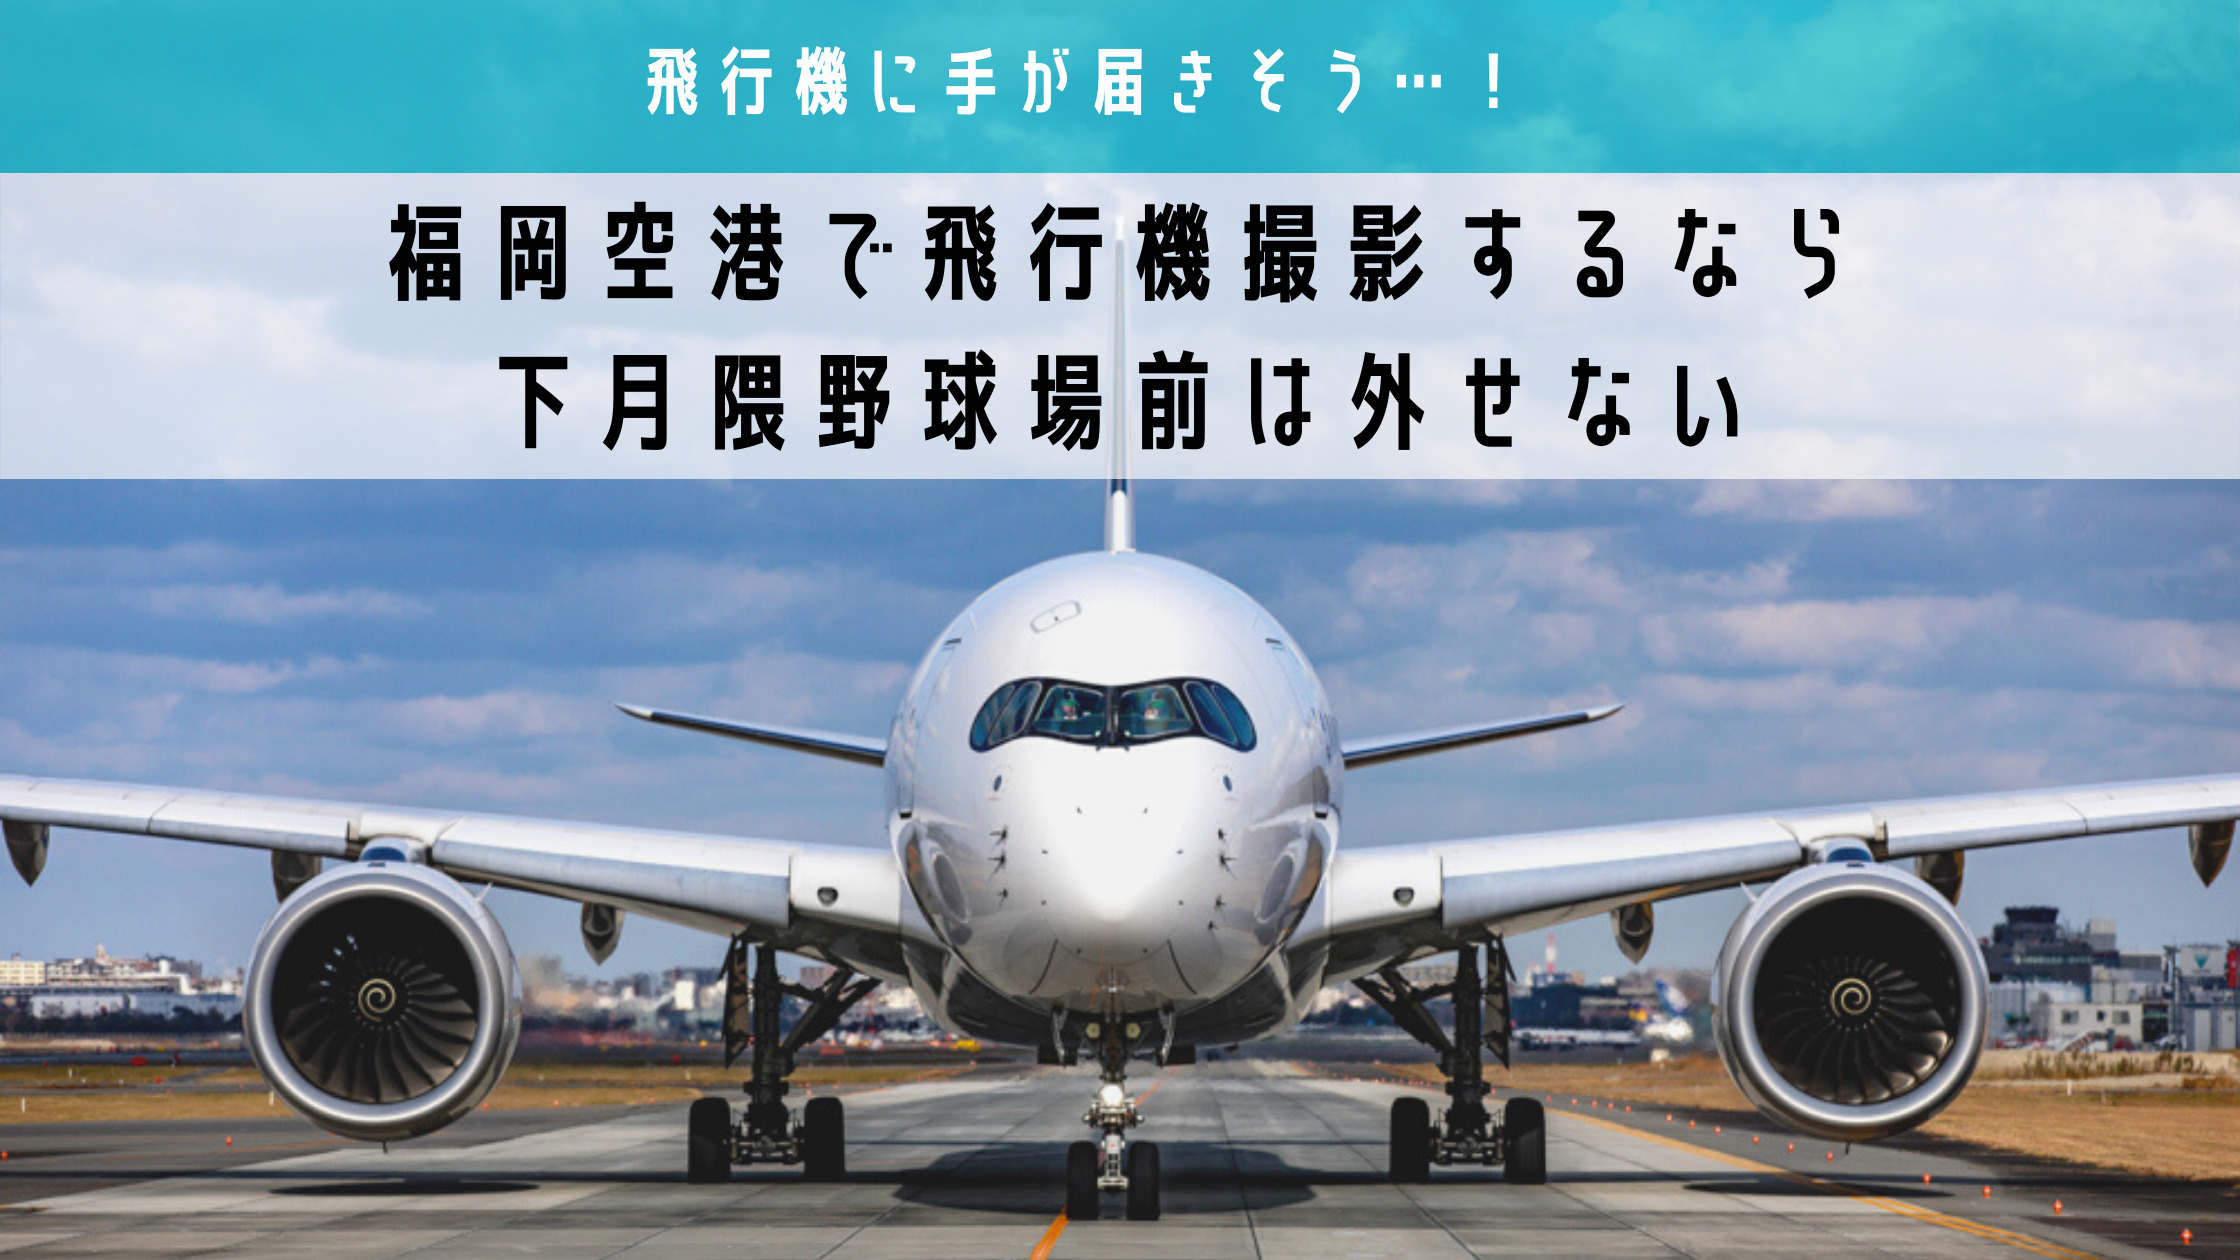 飛行機に手が届きそう 福岡空港で飛行機撮影するなら下月隈野球場前は外せない シテイリョウコウ